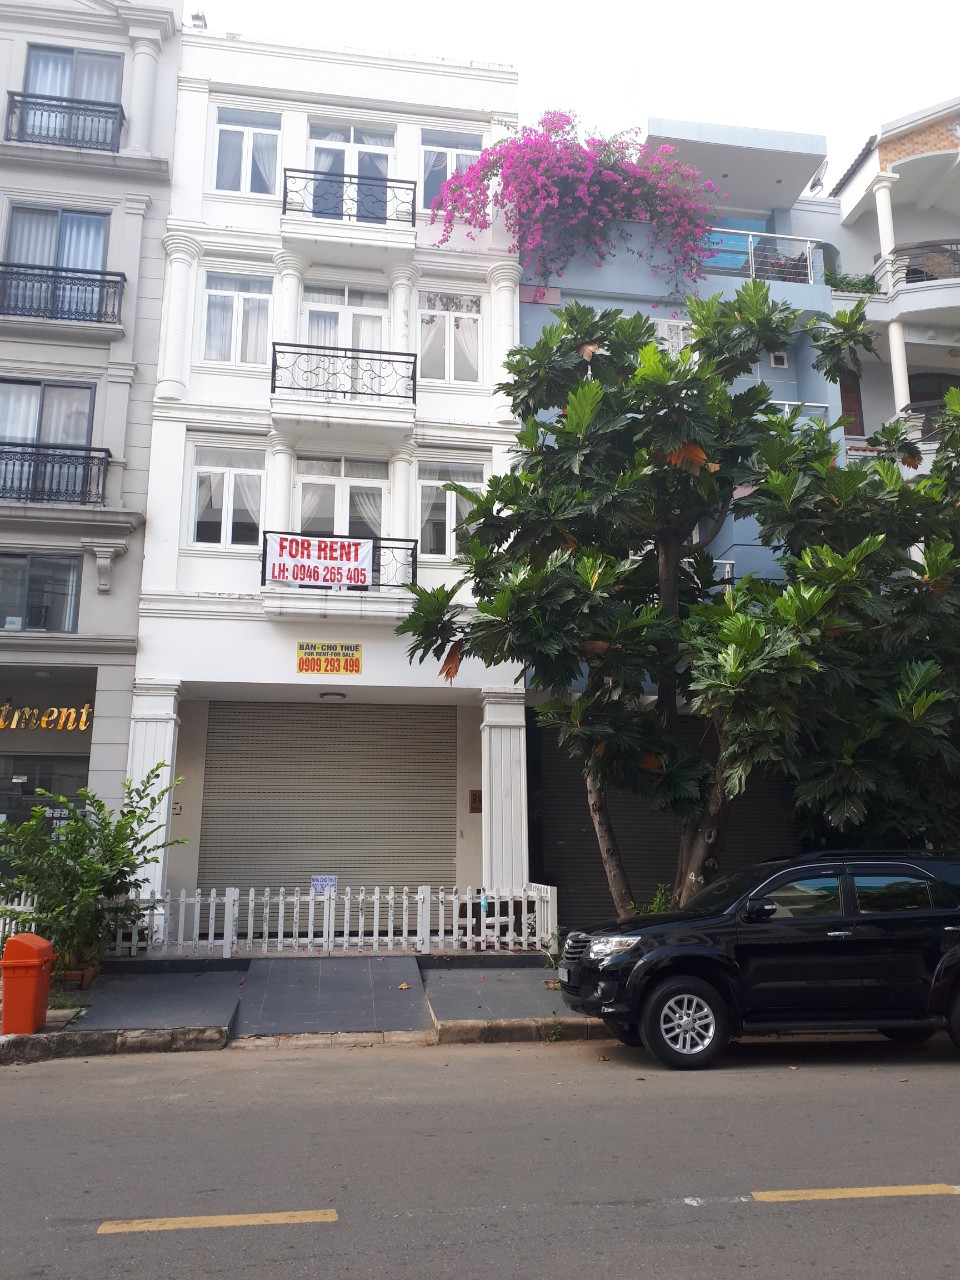 Bán nhà mặt phố tại Dự án Khu nhà phố Hưng Phước, Quận 7, Tp.HCM giá tốt